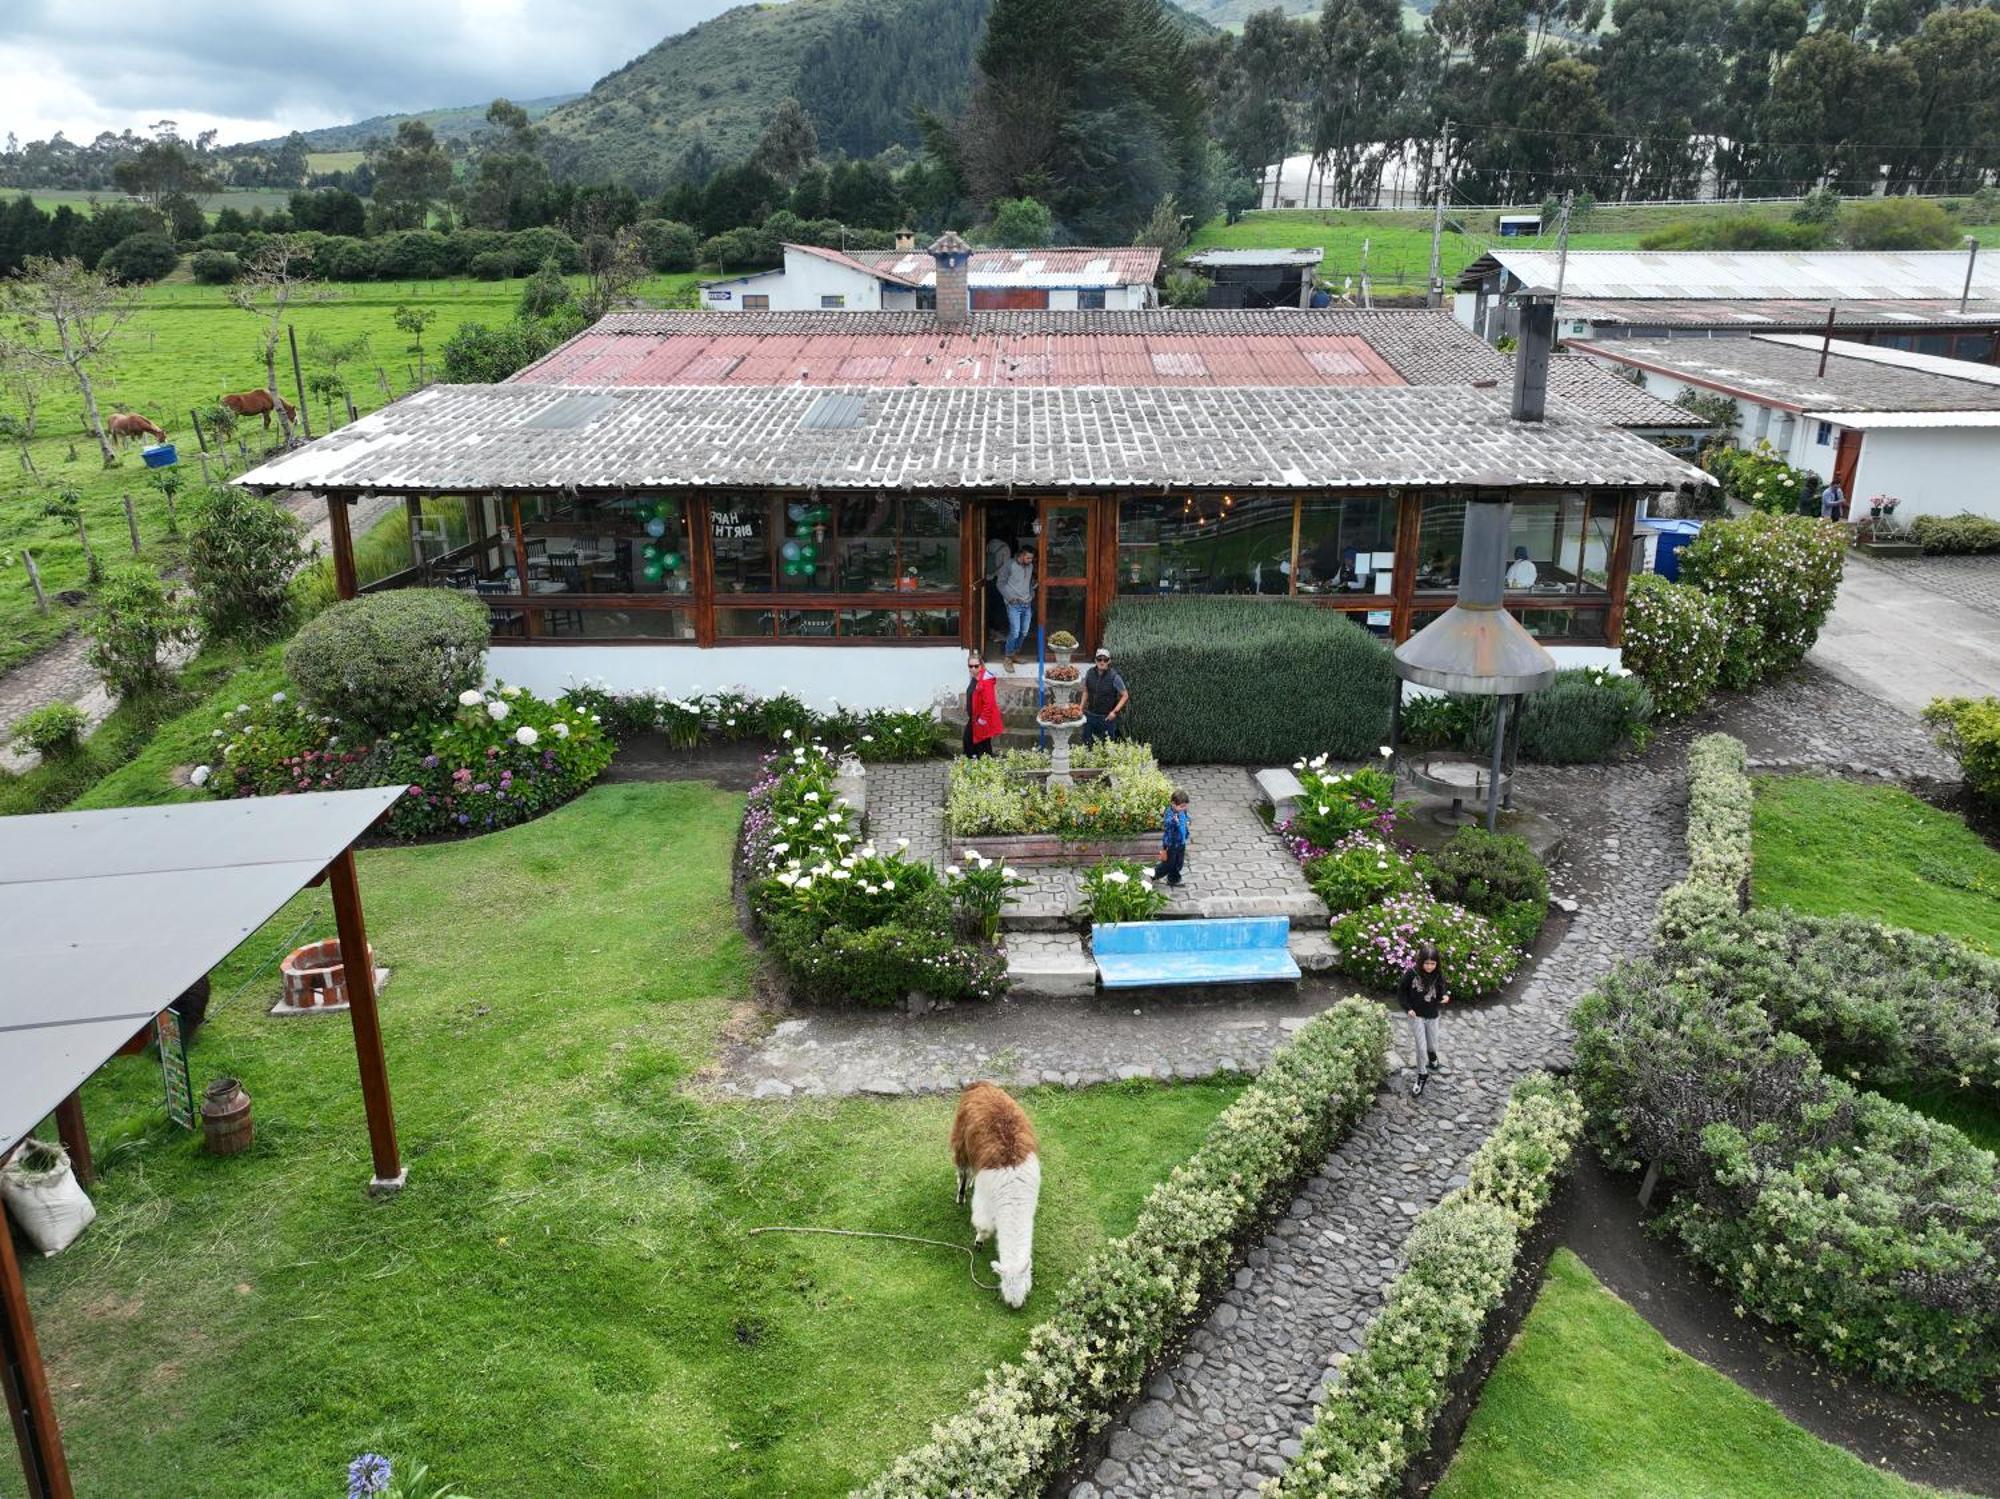 Vila Hacienda El Rejo Machachi Exteriér fotografie